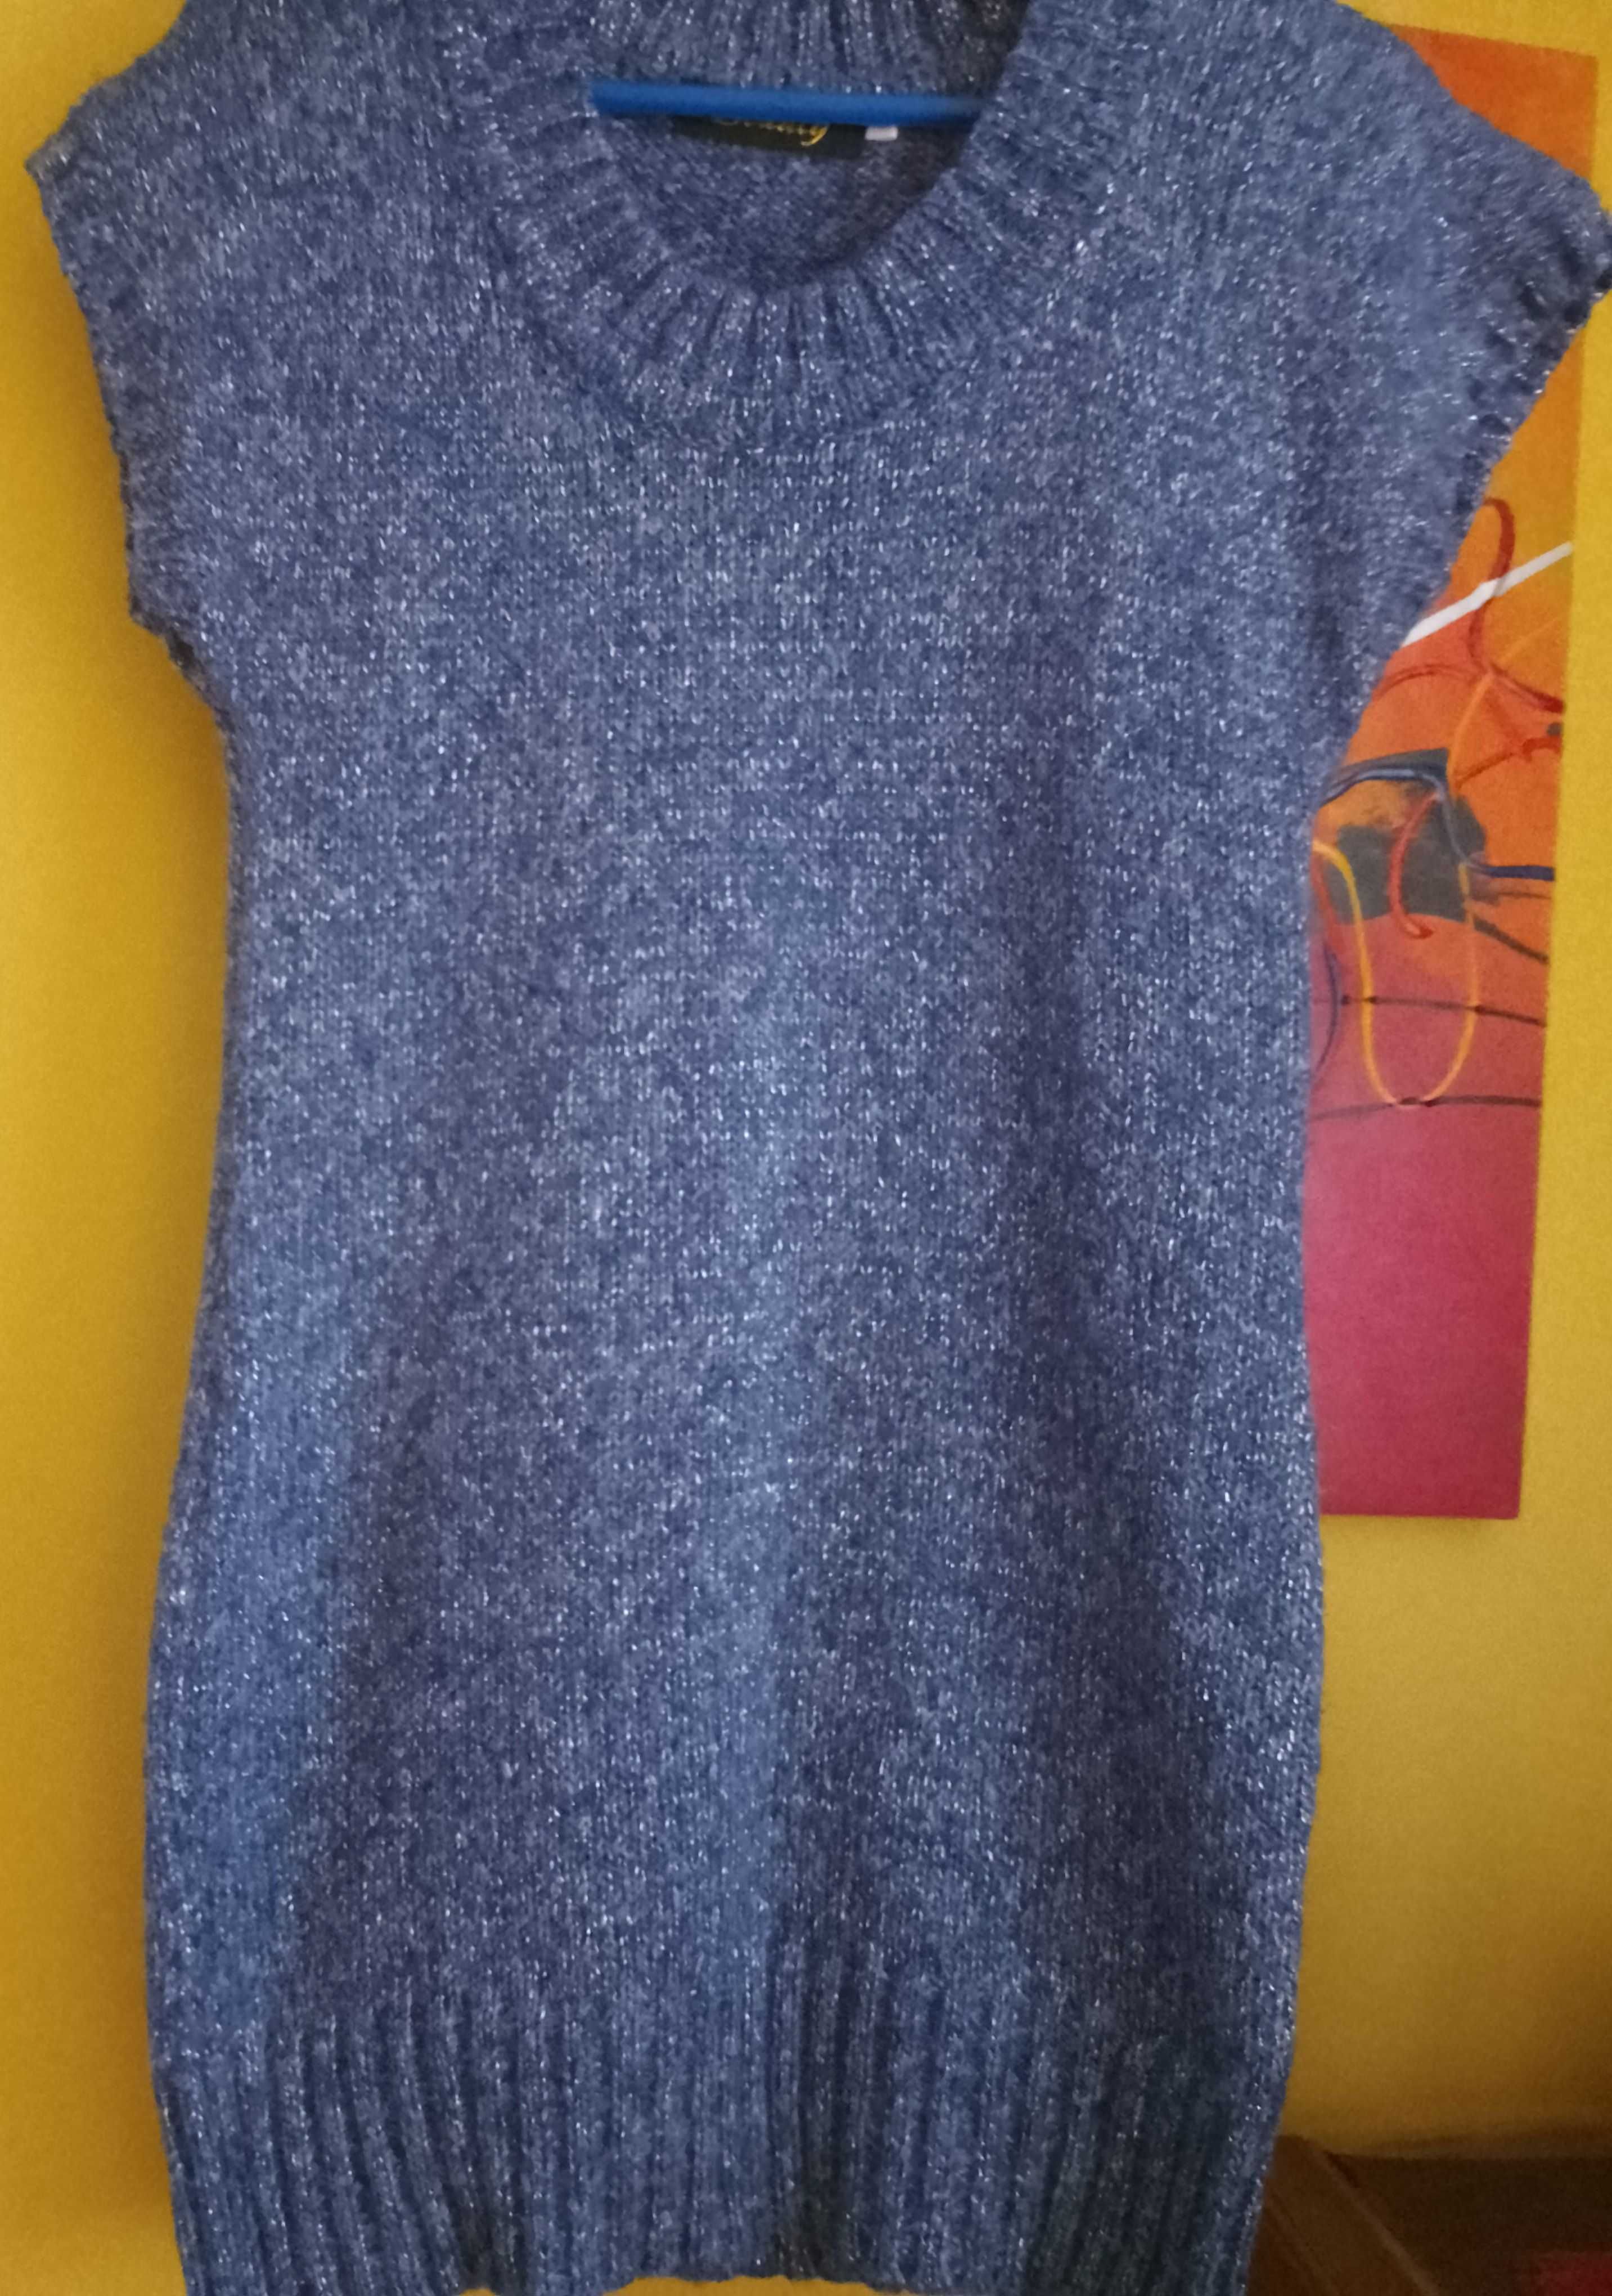 sweter niebieski/srebrna nitka bez rękawów dłuższy 38 M